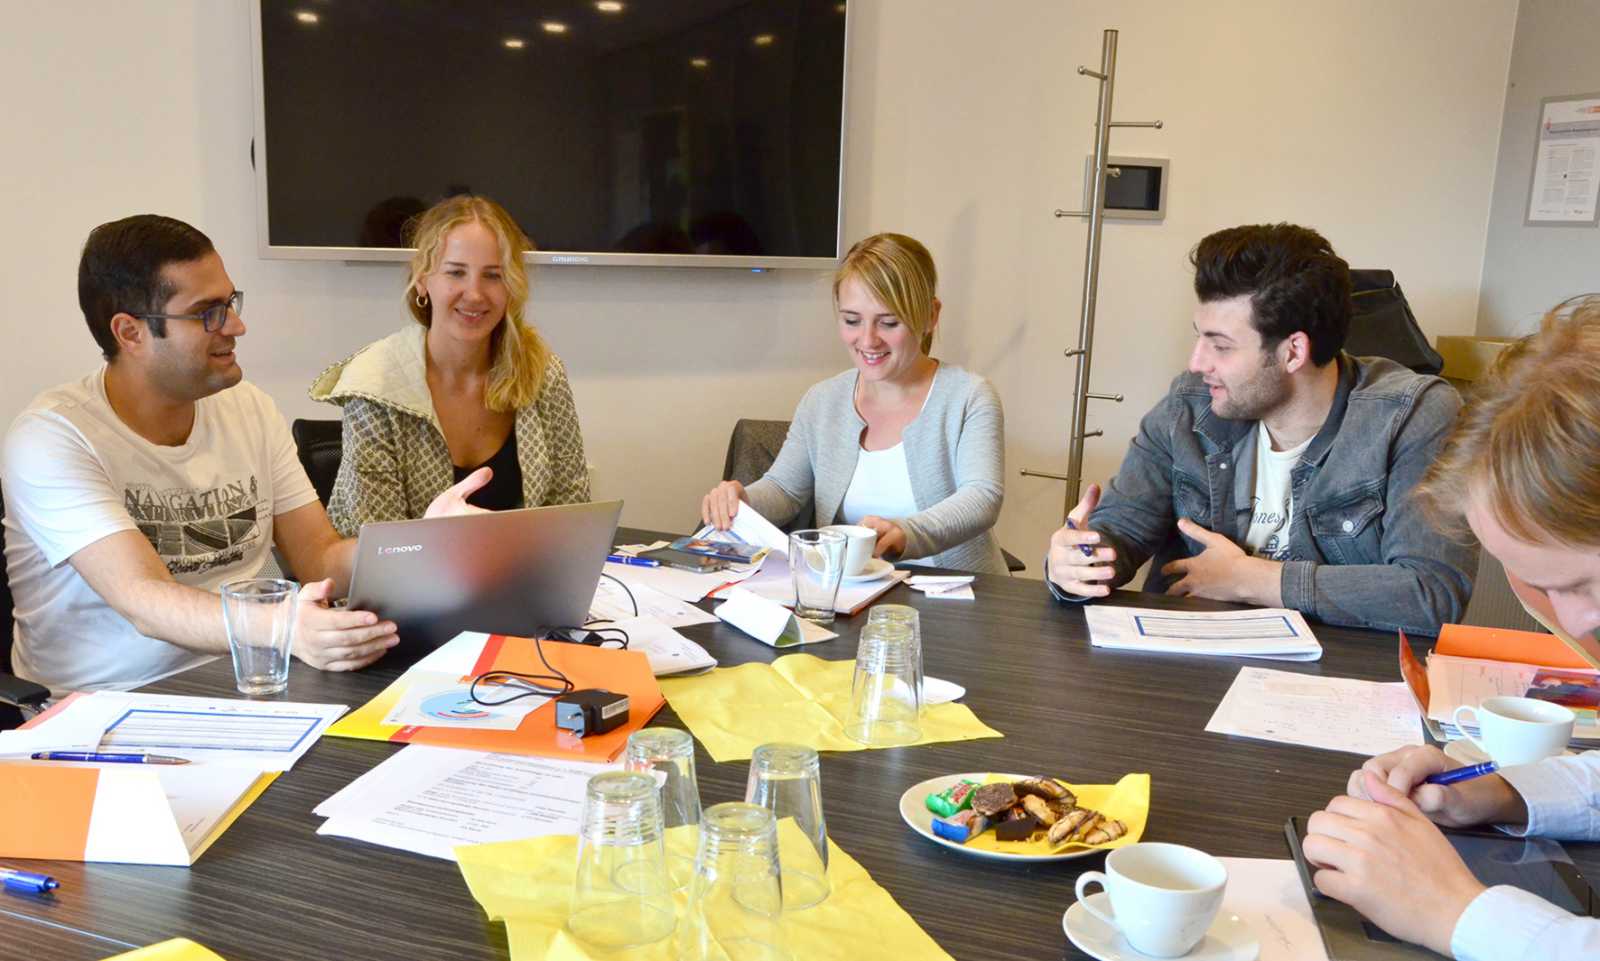 Sally Friedrich (M.) von der FH Münster diskutiert mit Teilnehmern der Summer School über ihre Geschäftsideen. (Foto: FH Münster/Pressestelle)